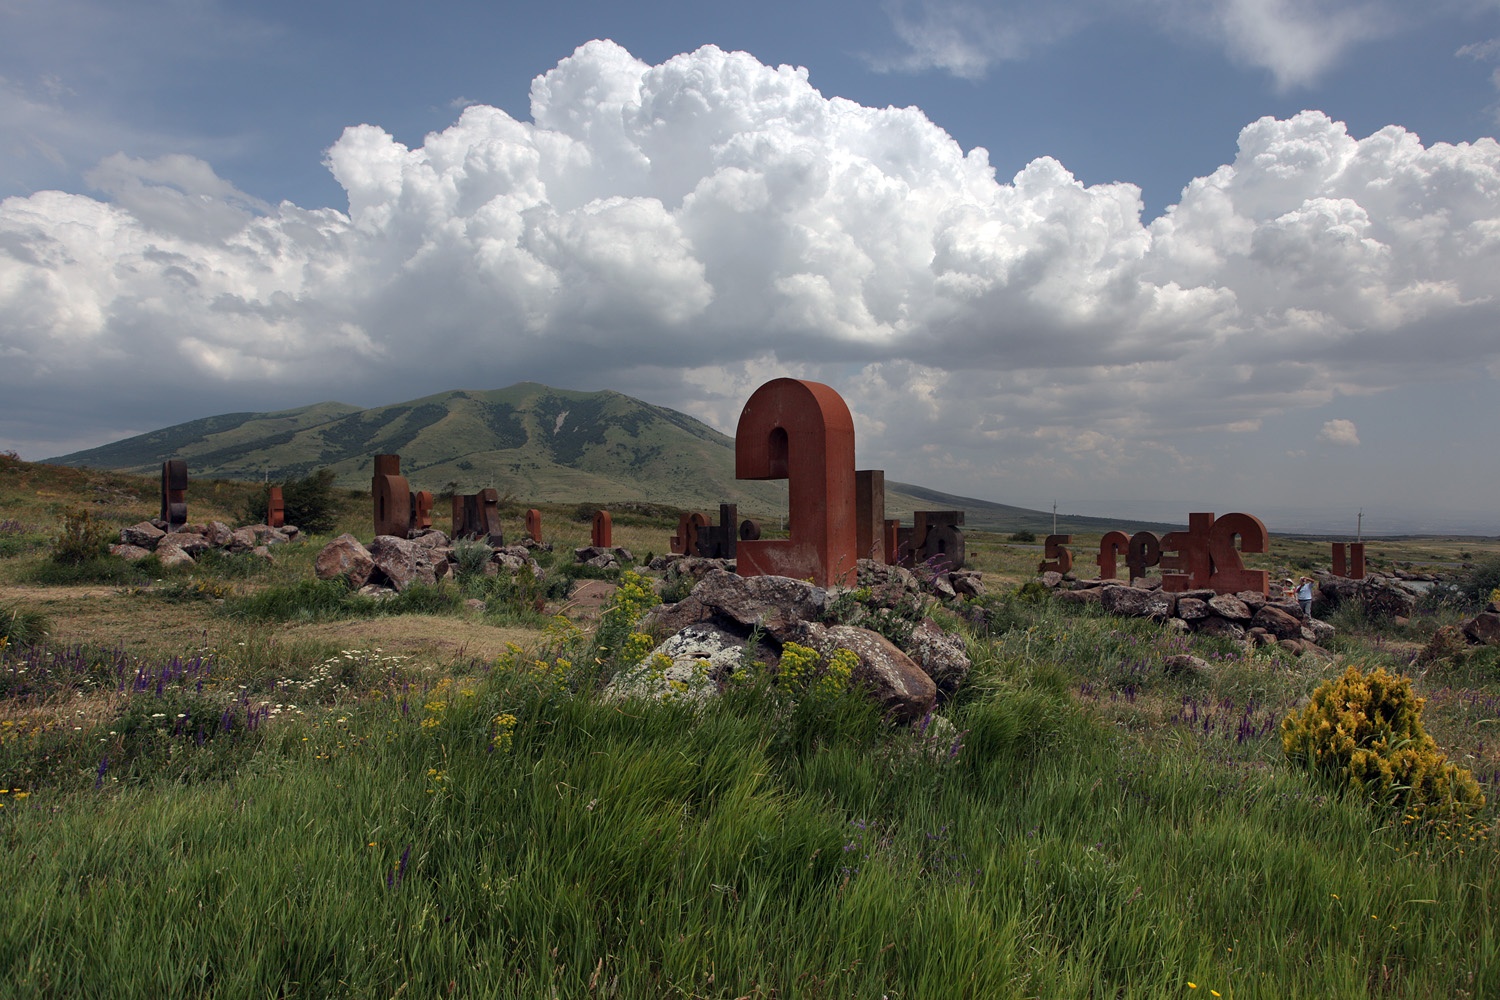 bill-hocker-road-to-mt-aragats-armenia-2013